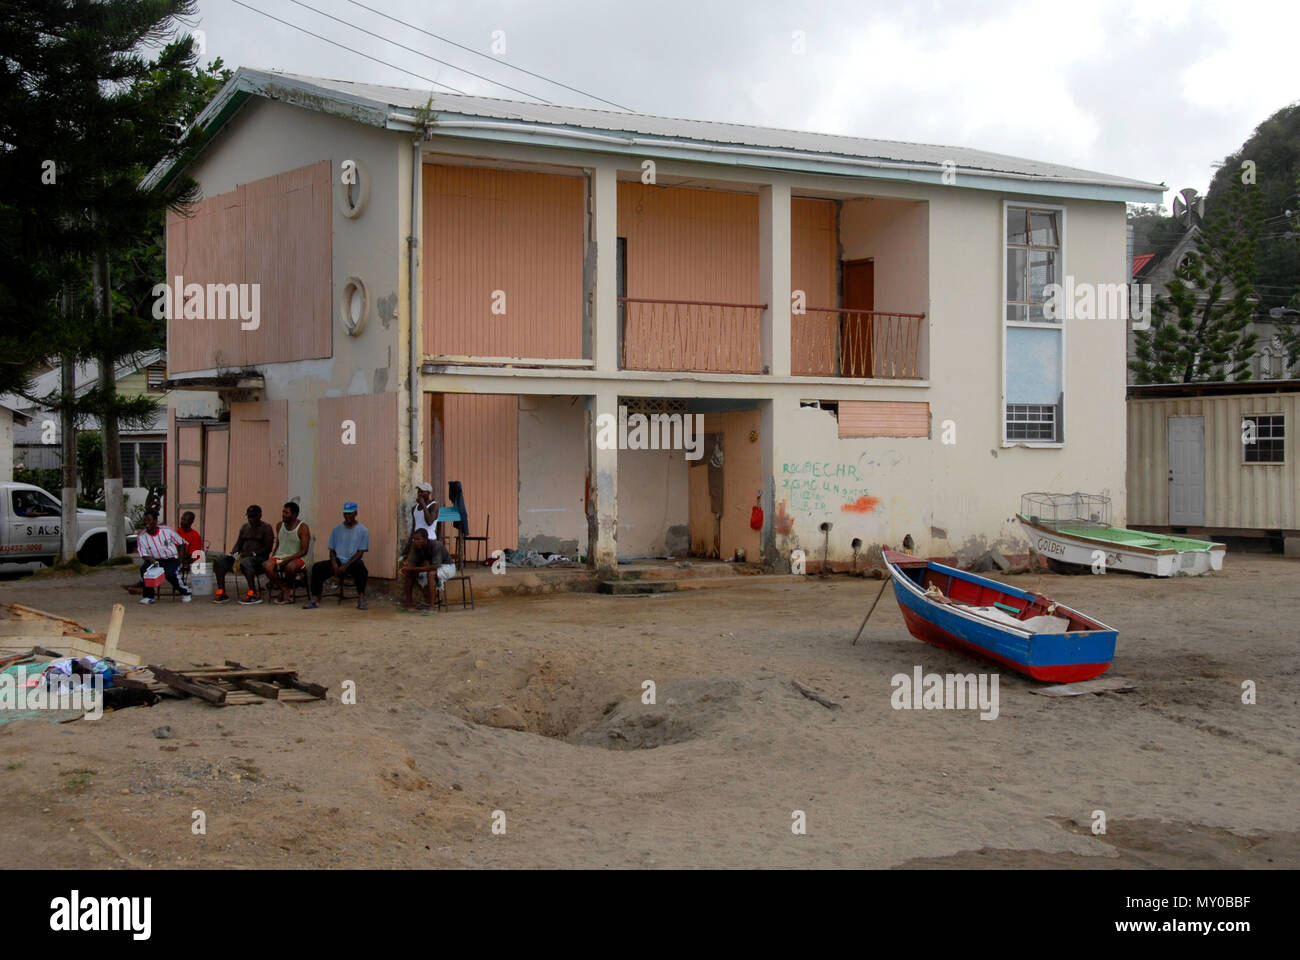 Groupe d'hommes au chômage assis à côté du bâtiment délabré, Sainte-Lucie, Caraïbes Banque D'Images